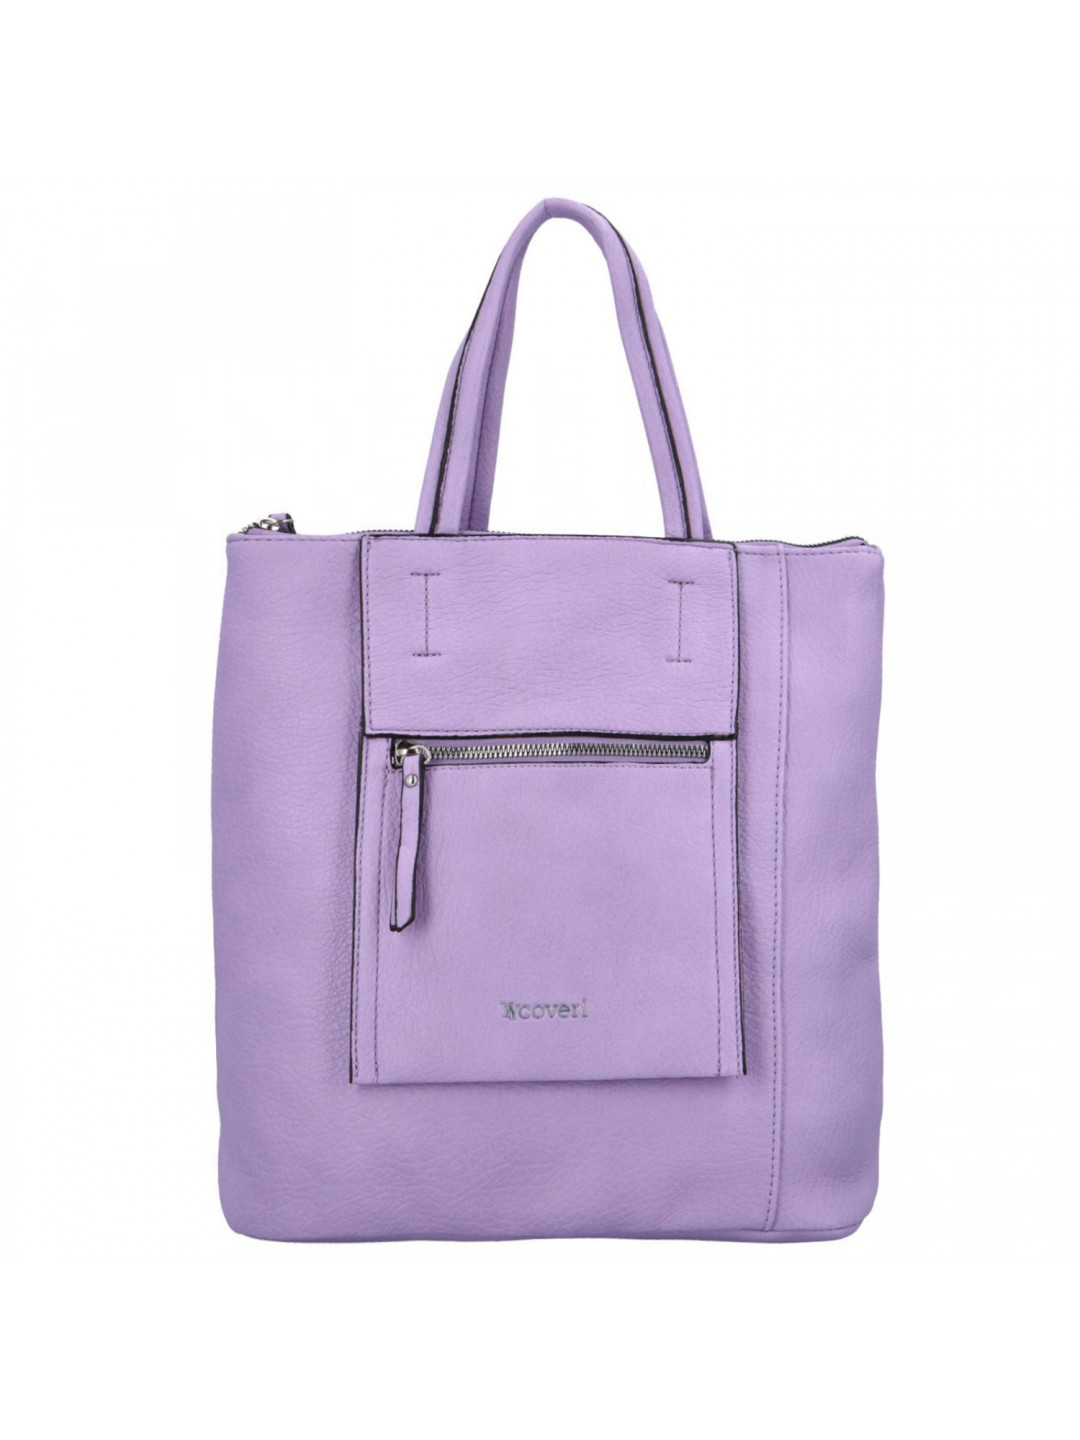 Dámský kabelko batoh fialový – Coveri Déborah